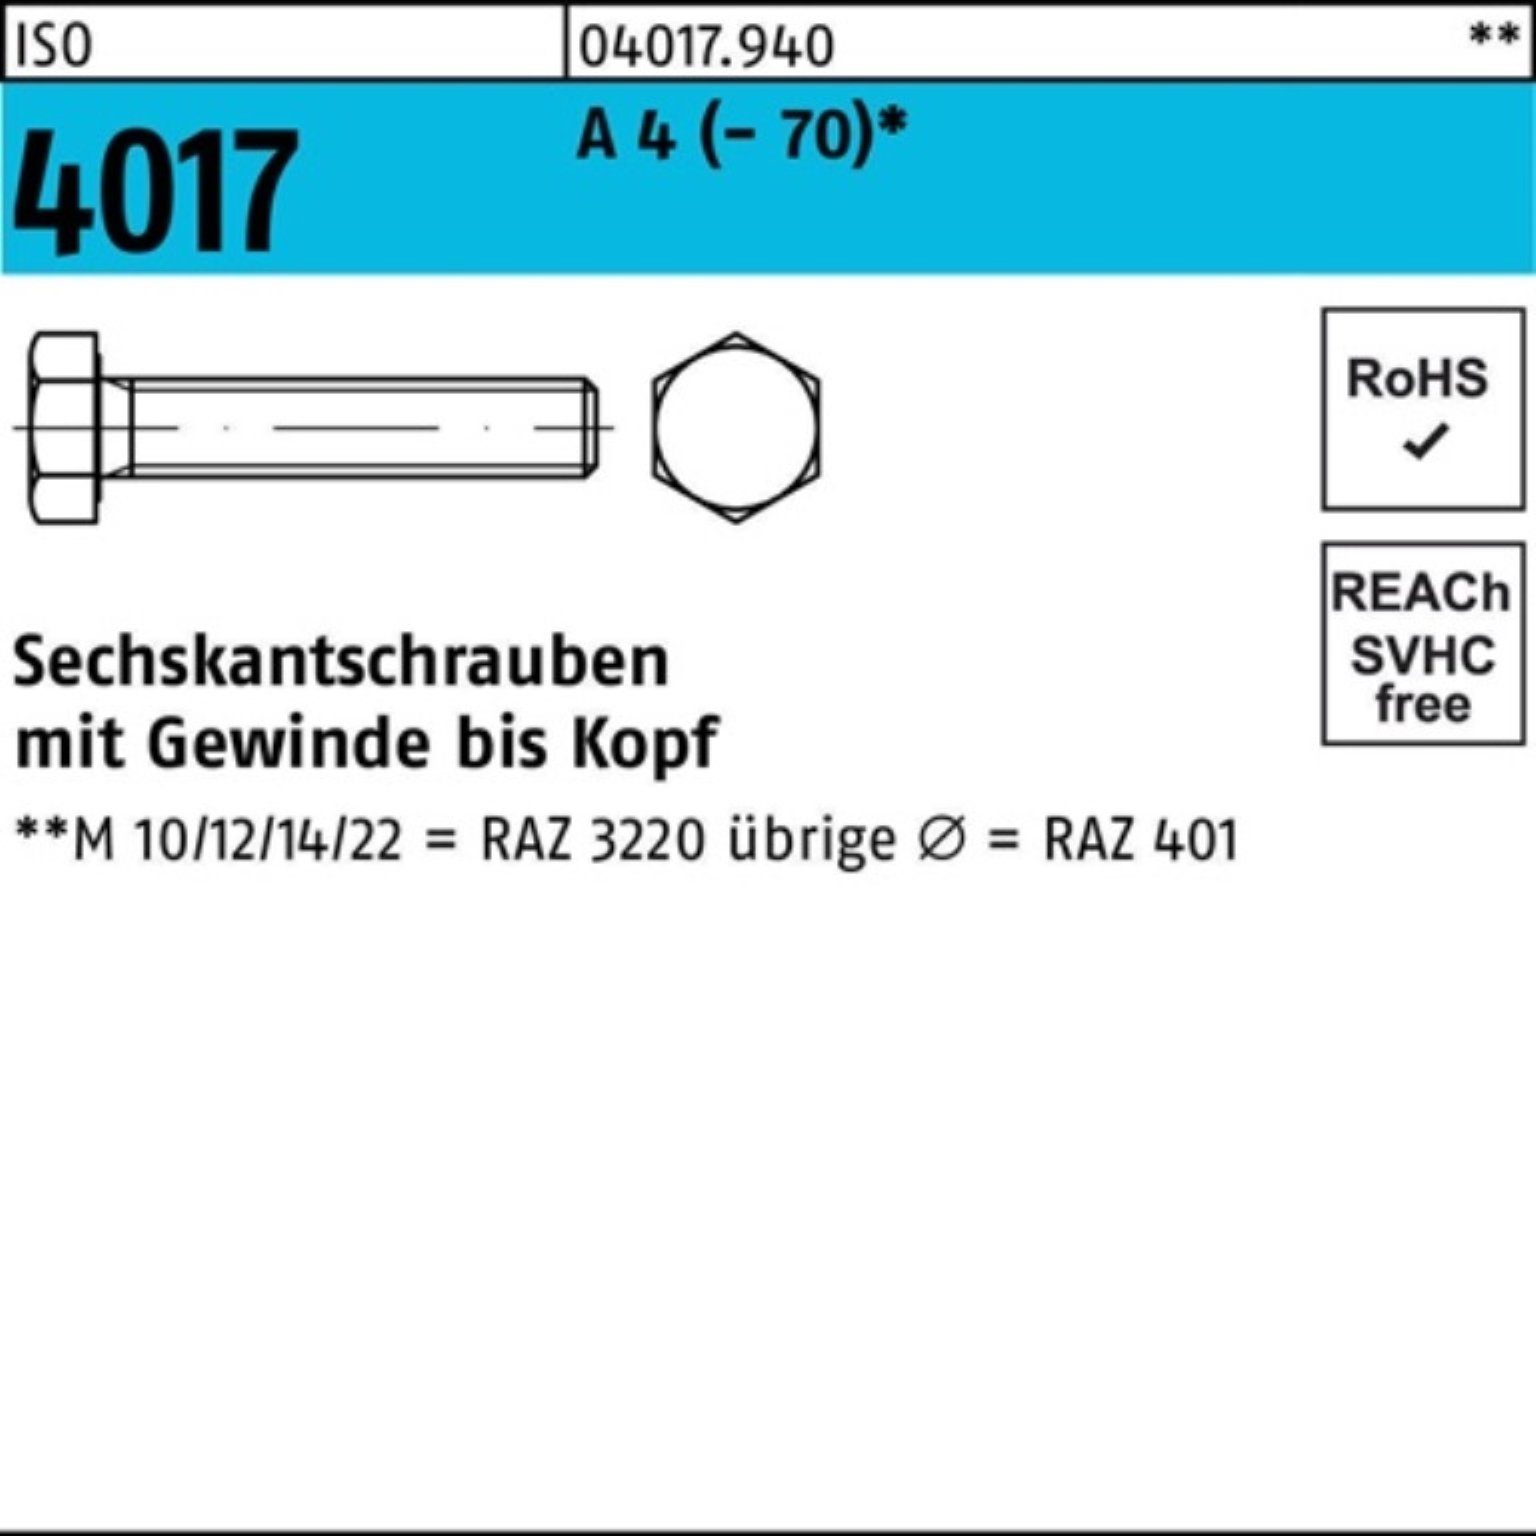 Bufab Sechskantschraube 200er Pack Sechskantschraube ISO 4017 VG M8x 12 A 4 (70) 200 Stück